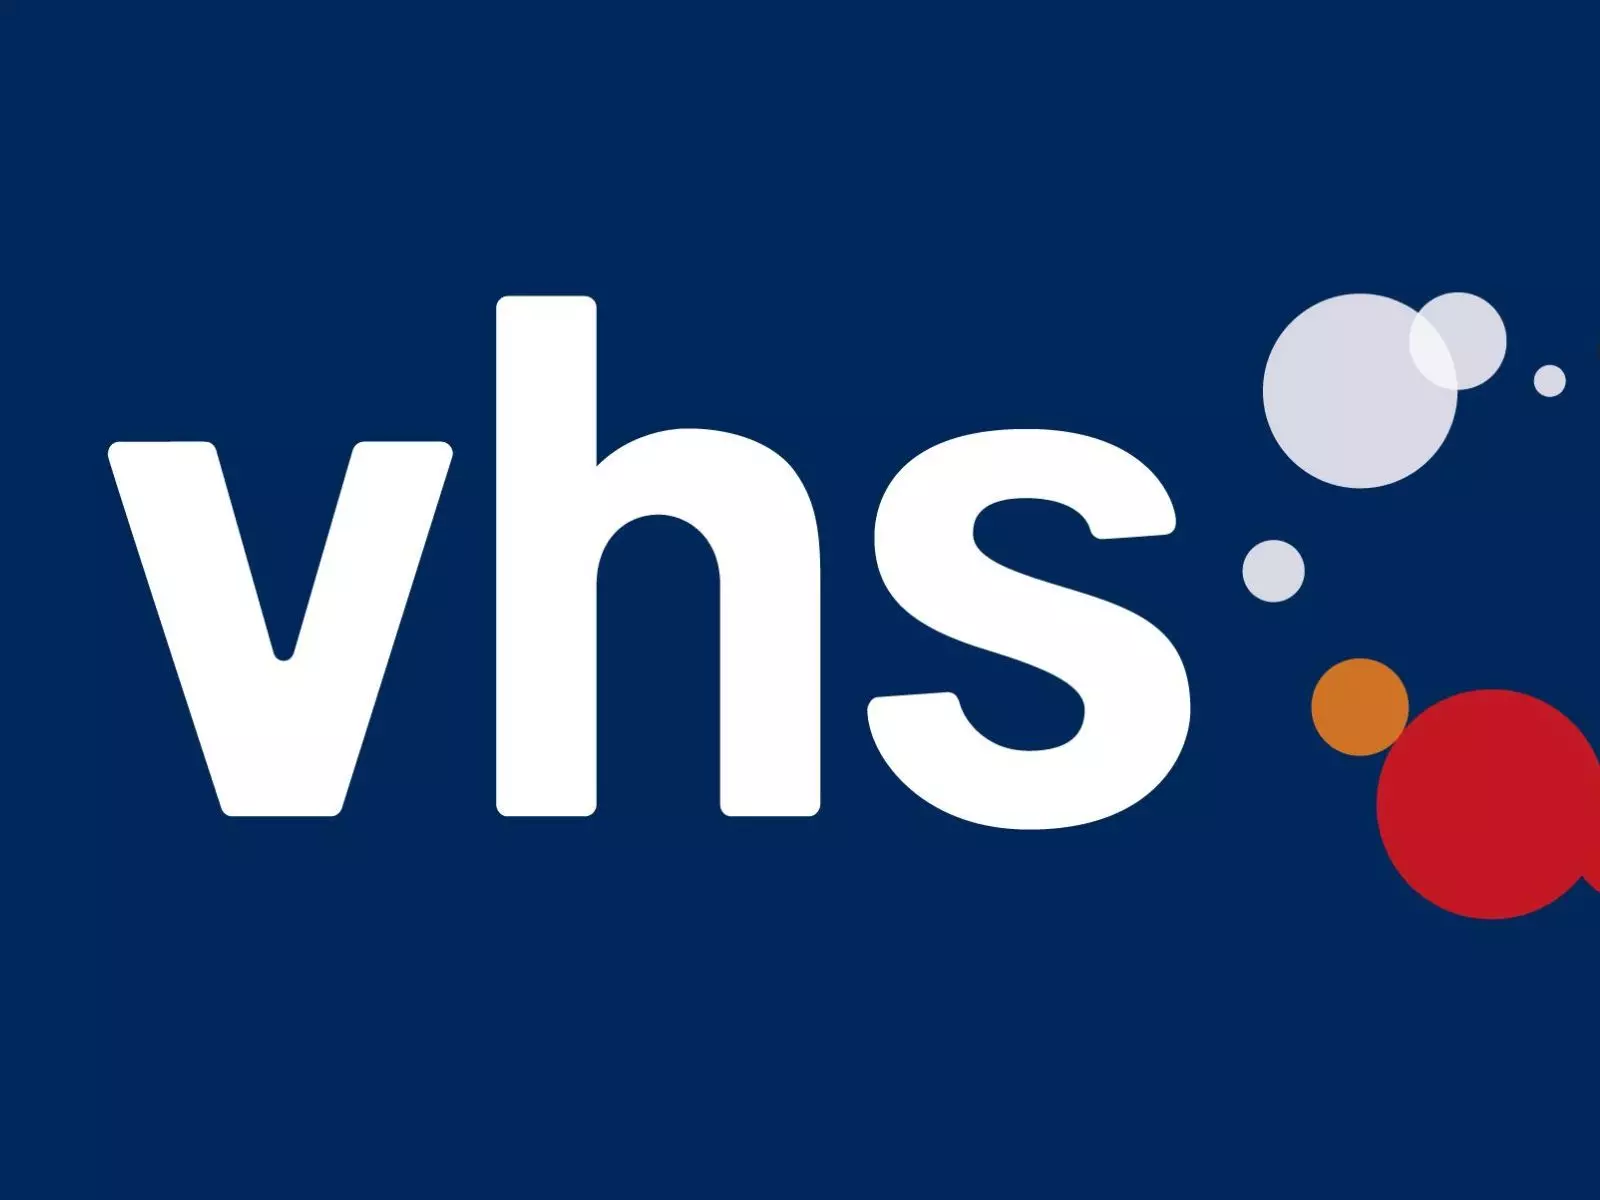 Logo_vhs.jpg